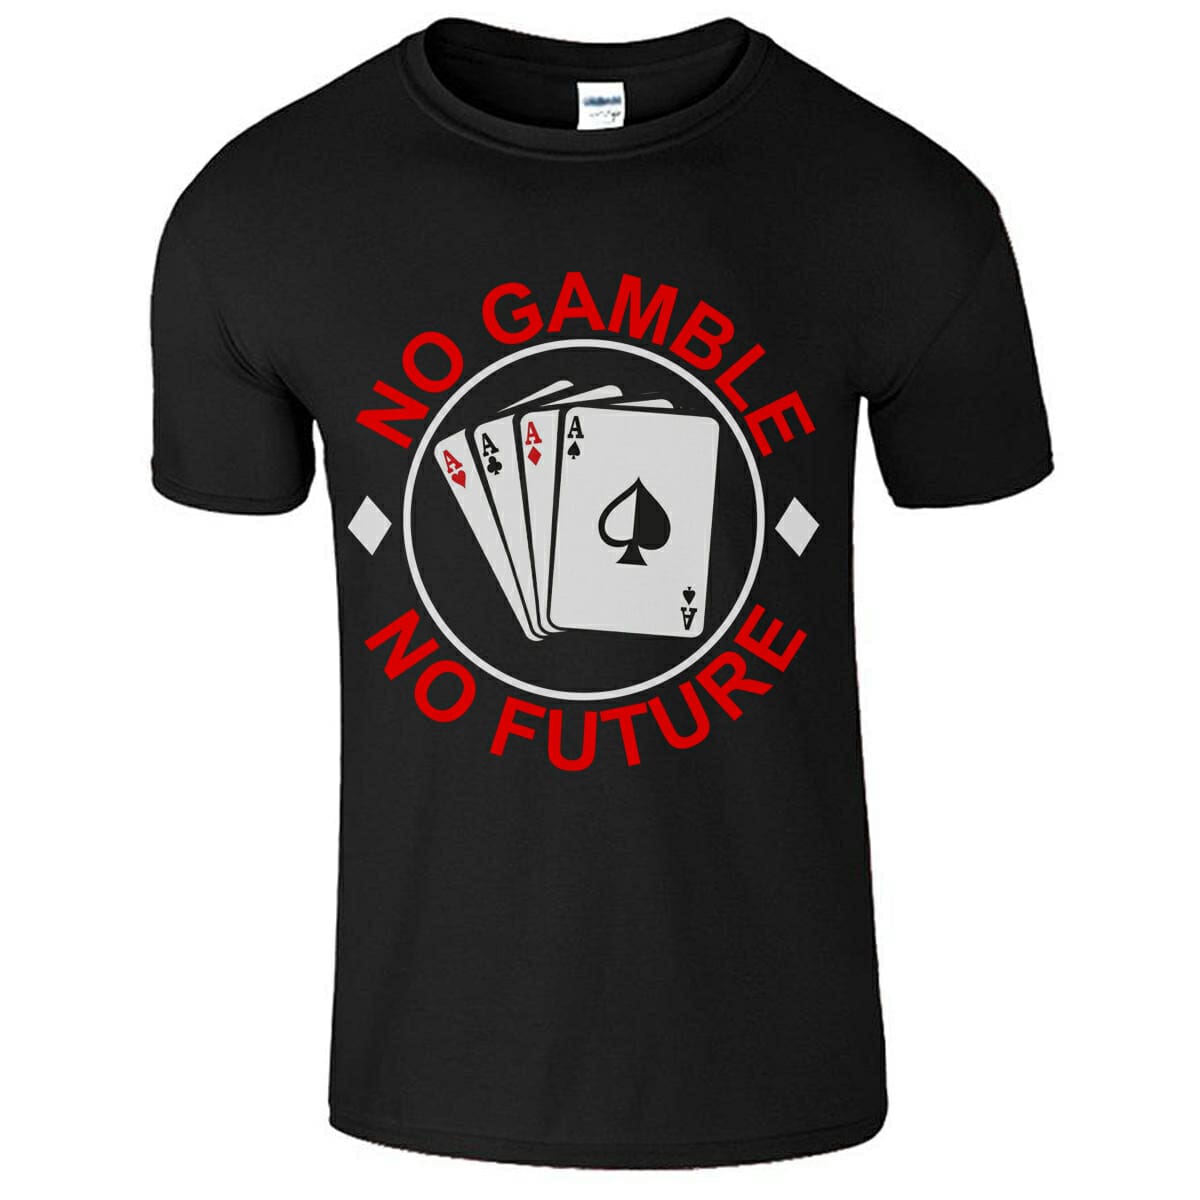 No Gamble No Future Funny T-Shirt Design For Gamblers